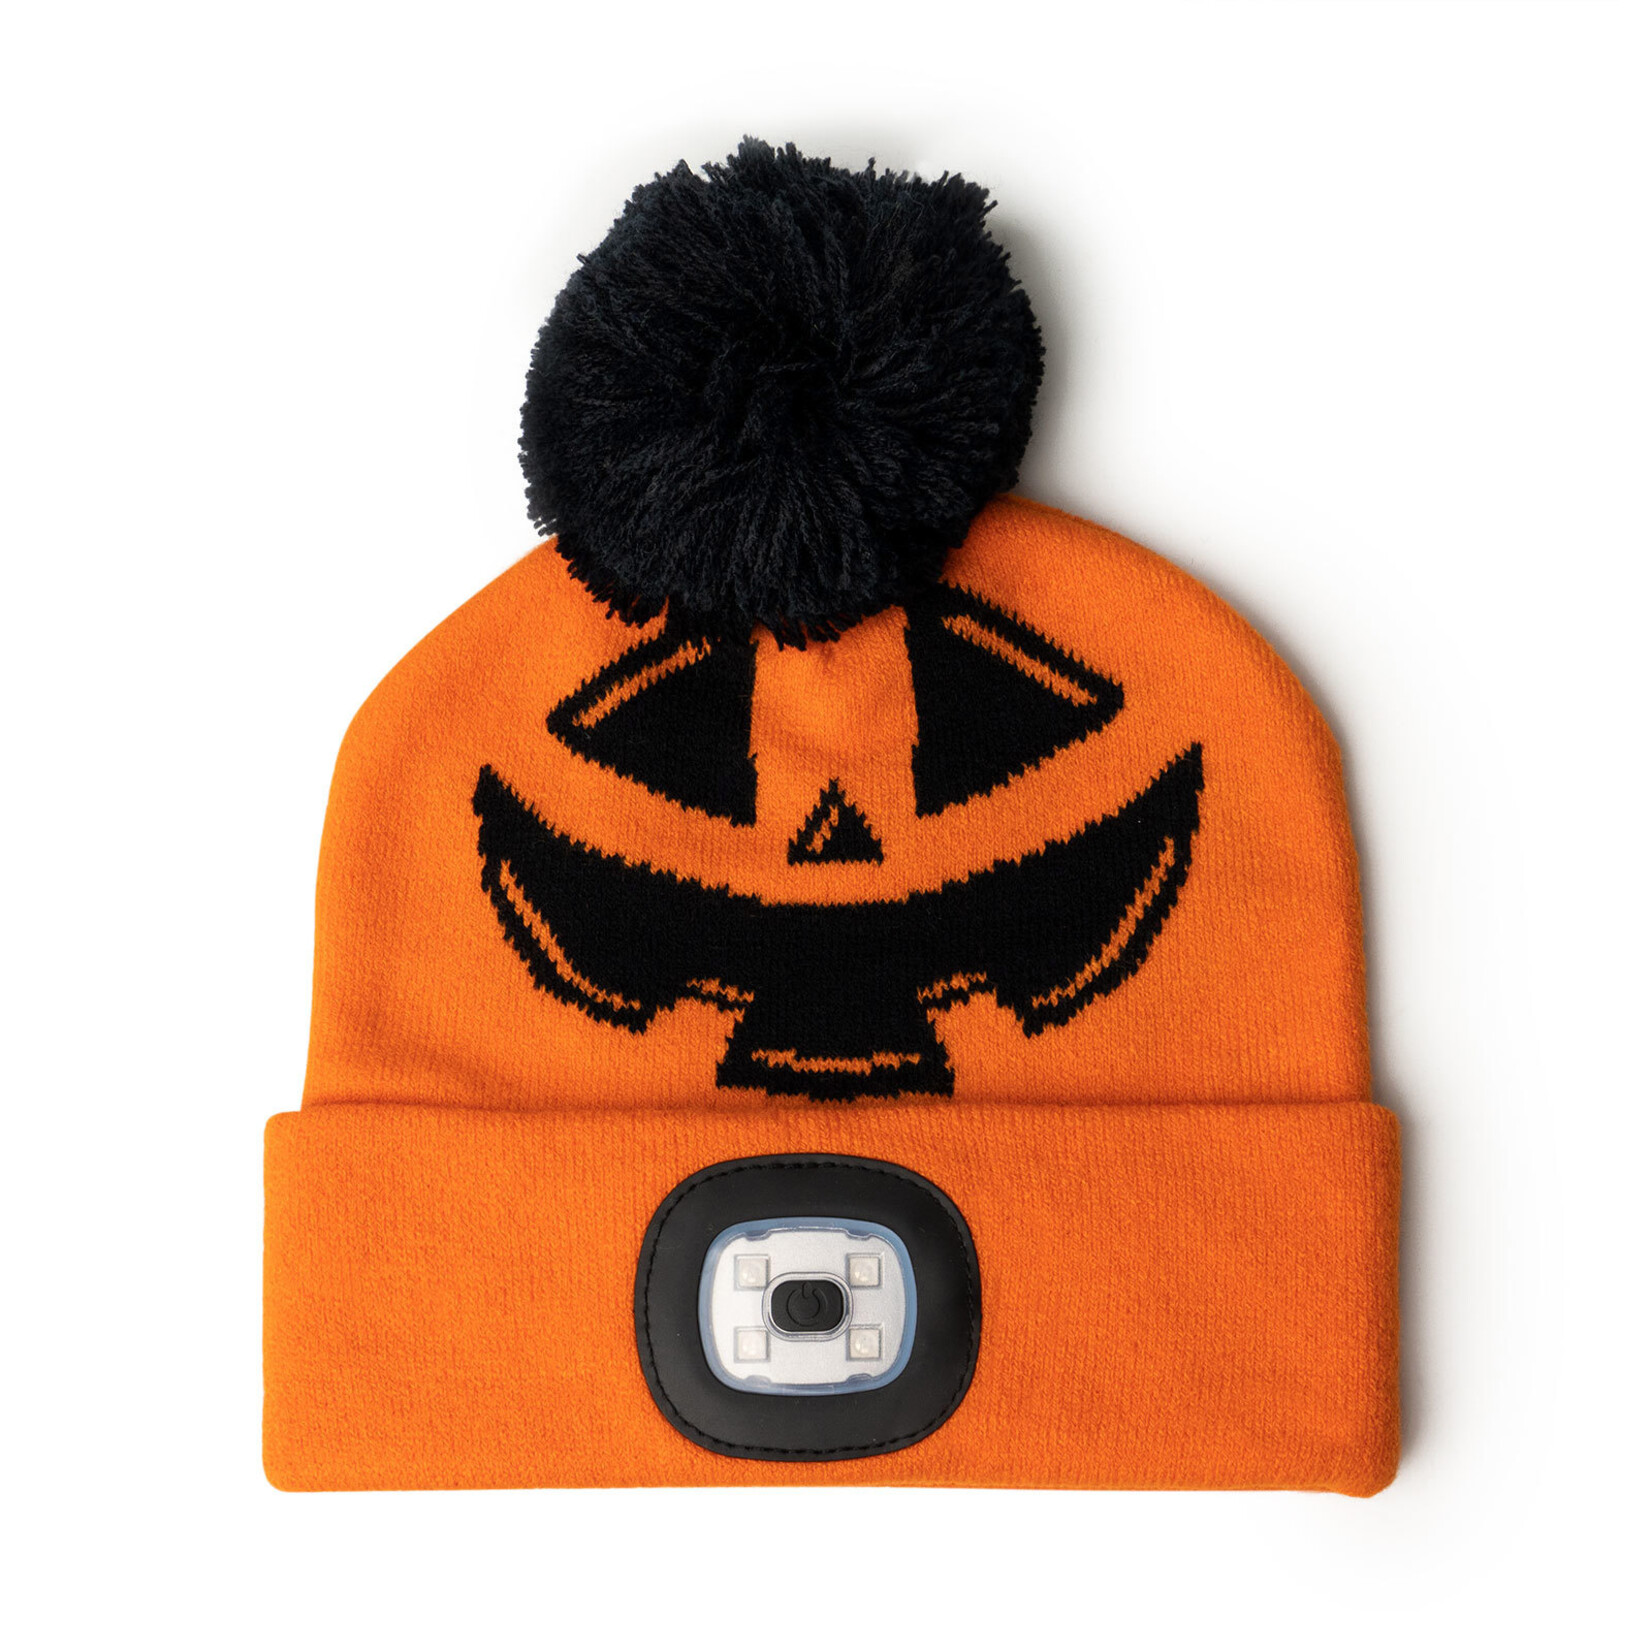 DM Merchandising Halloween Night Scope Kids Hats